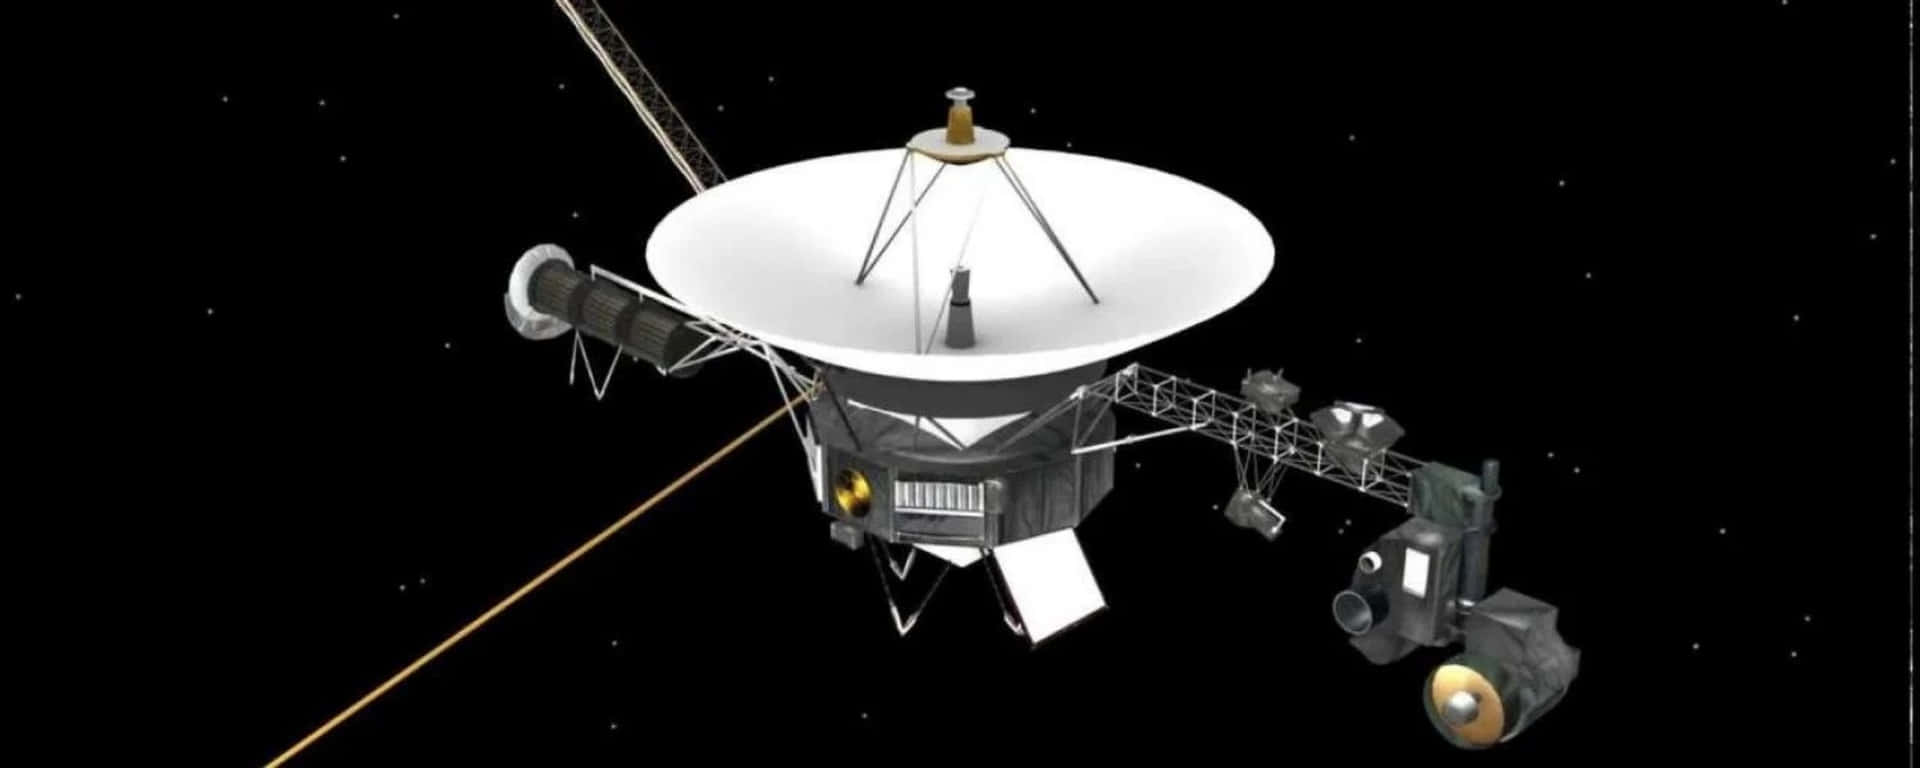 Aprendemás Sobre La Misión Voyager Mientras Exploramos El Espacio Profundo.